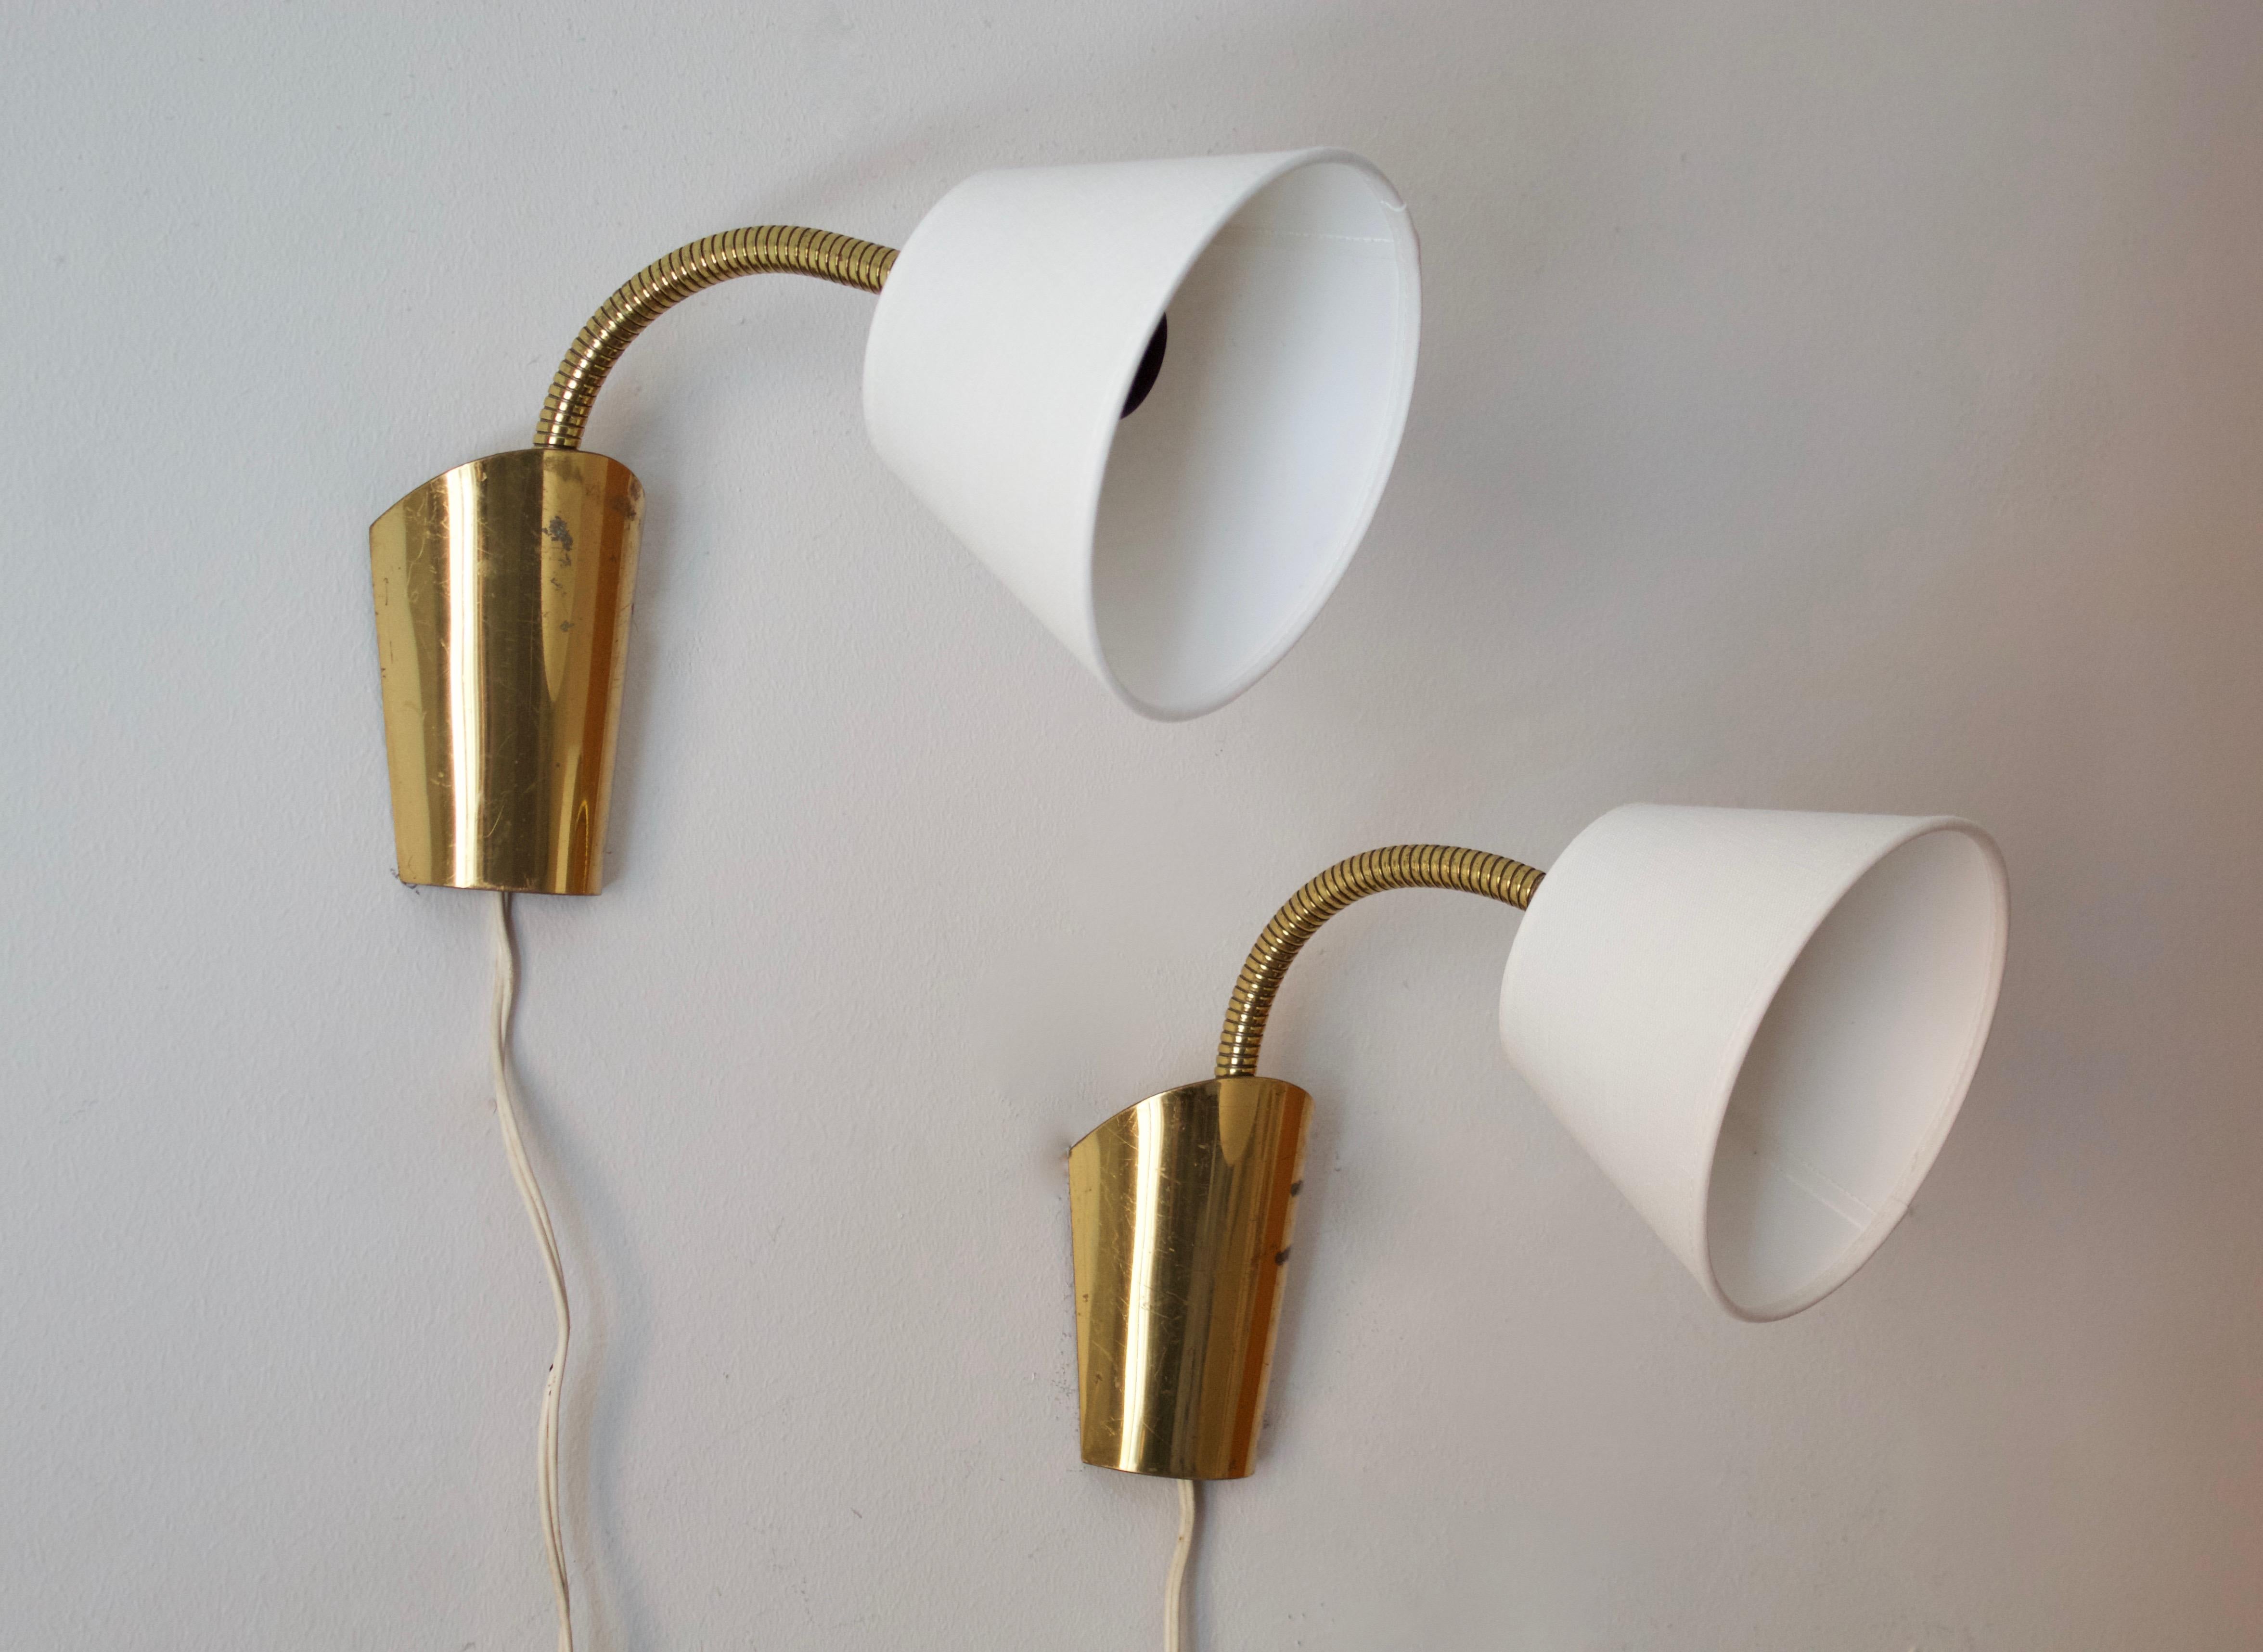 Ein Paar verstellbare modernistische Wandleuchten. Entworfen und hergestellt in Schweden, 1940er Jahre. Brandneue Lampenschirme

Gemessen wie im Primärbild dargestellt.